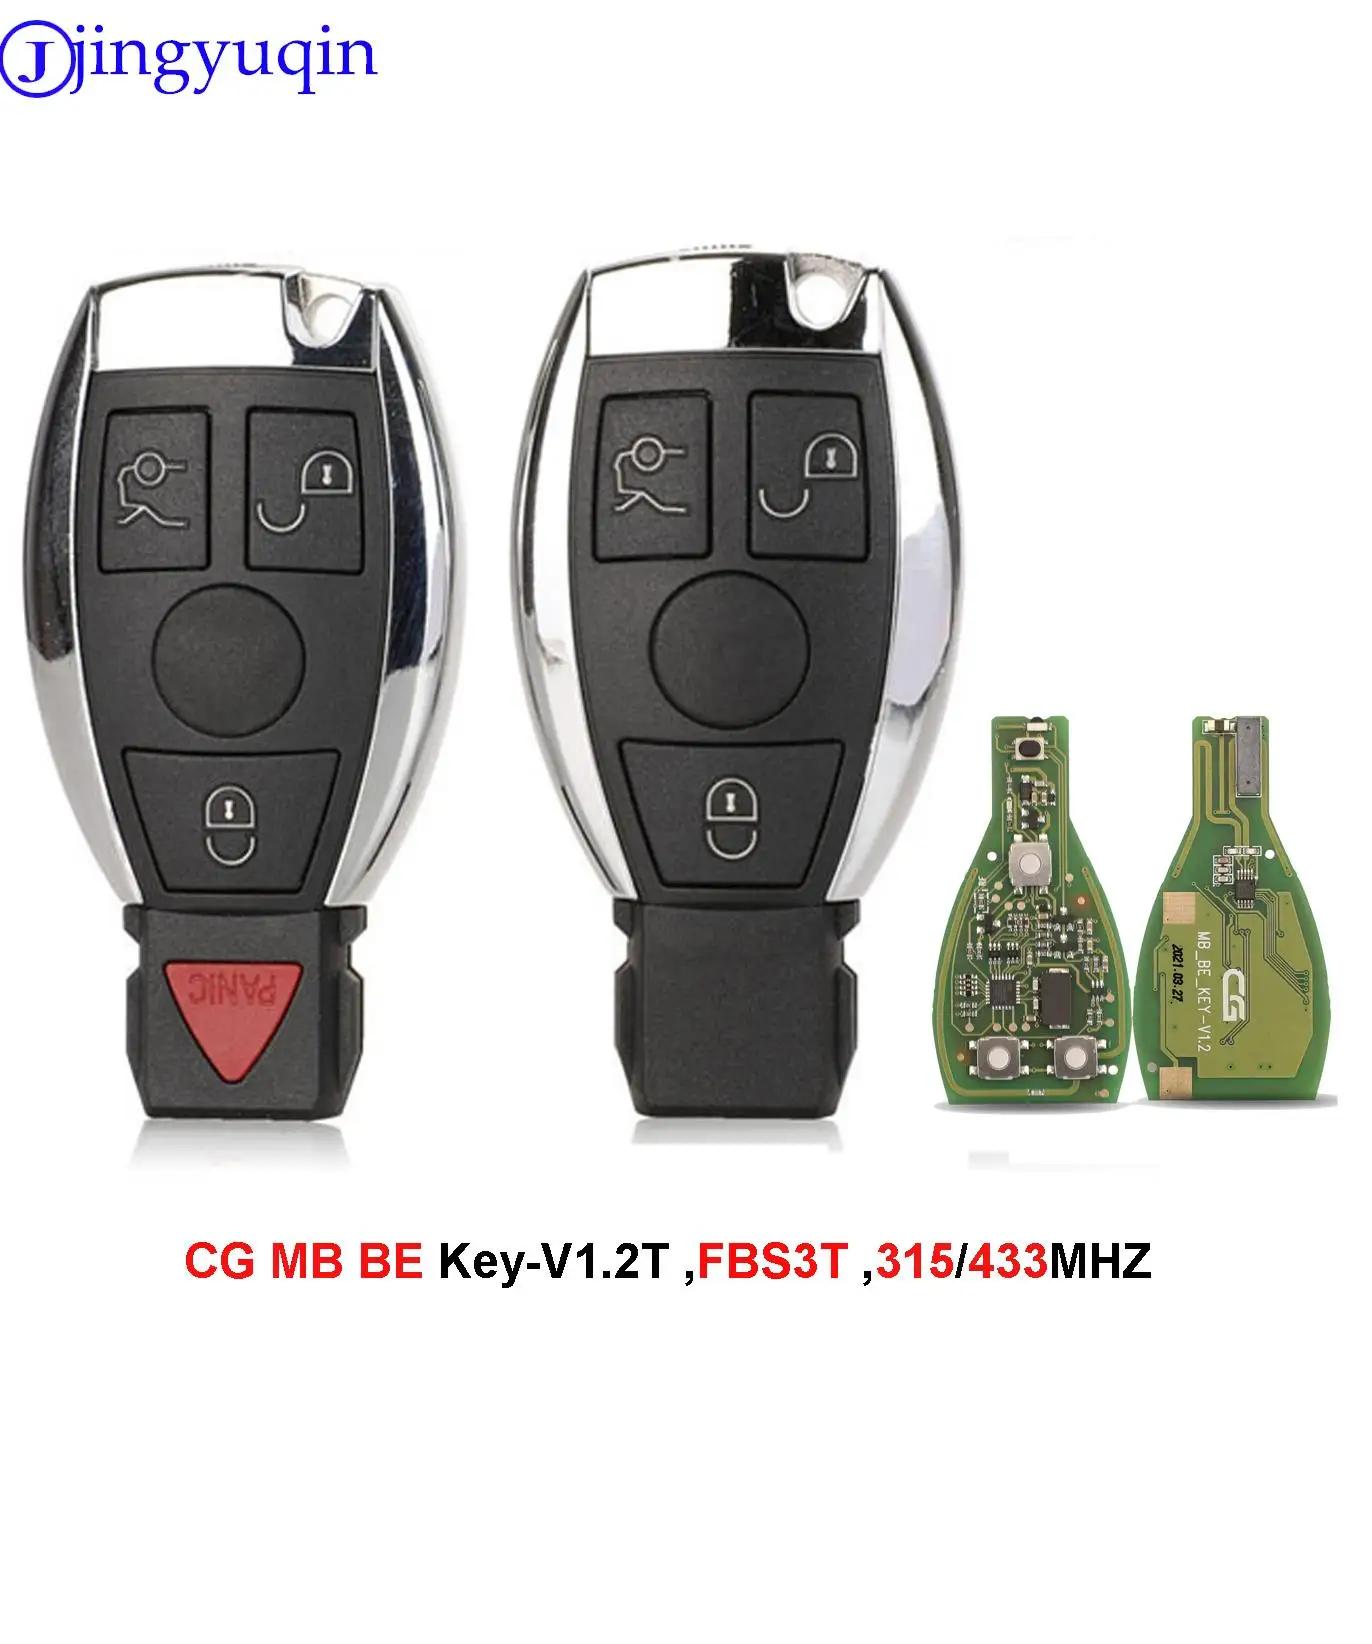 Jingyuqin-mando a distancia para llave de coche, mando a distancia CG MB BE-V1.2 Pro para Benz FBS3 221/216/164 /251 315/433MHZ, 3/4 botones para programador CGDI MB